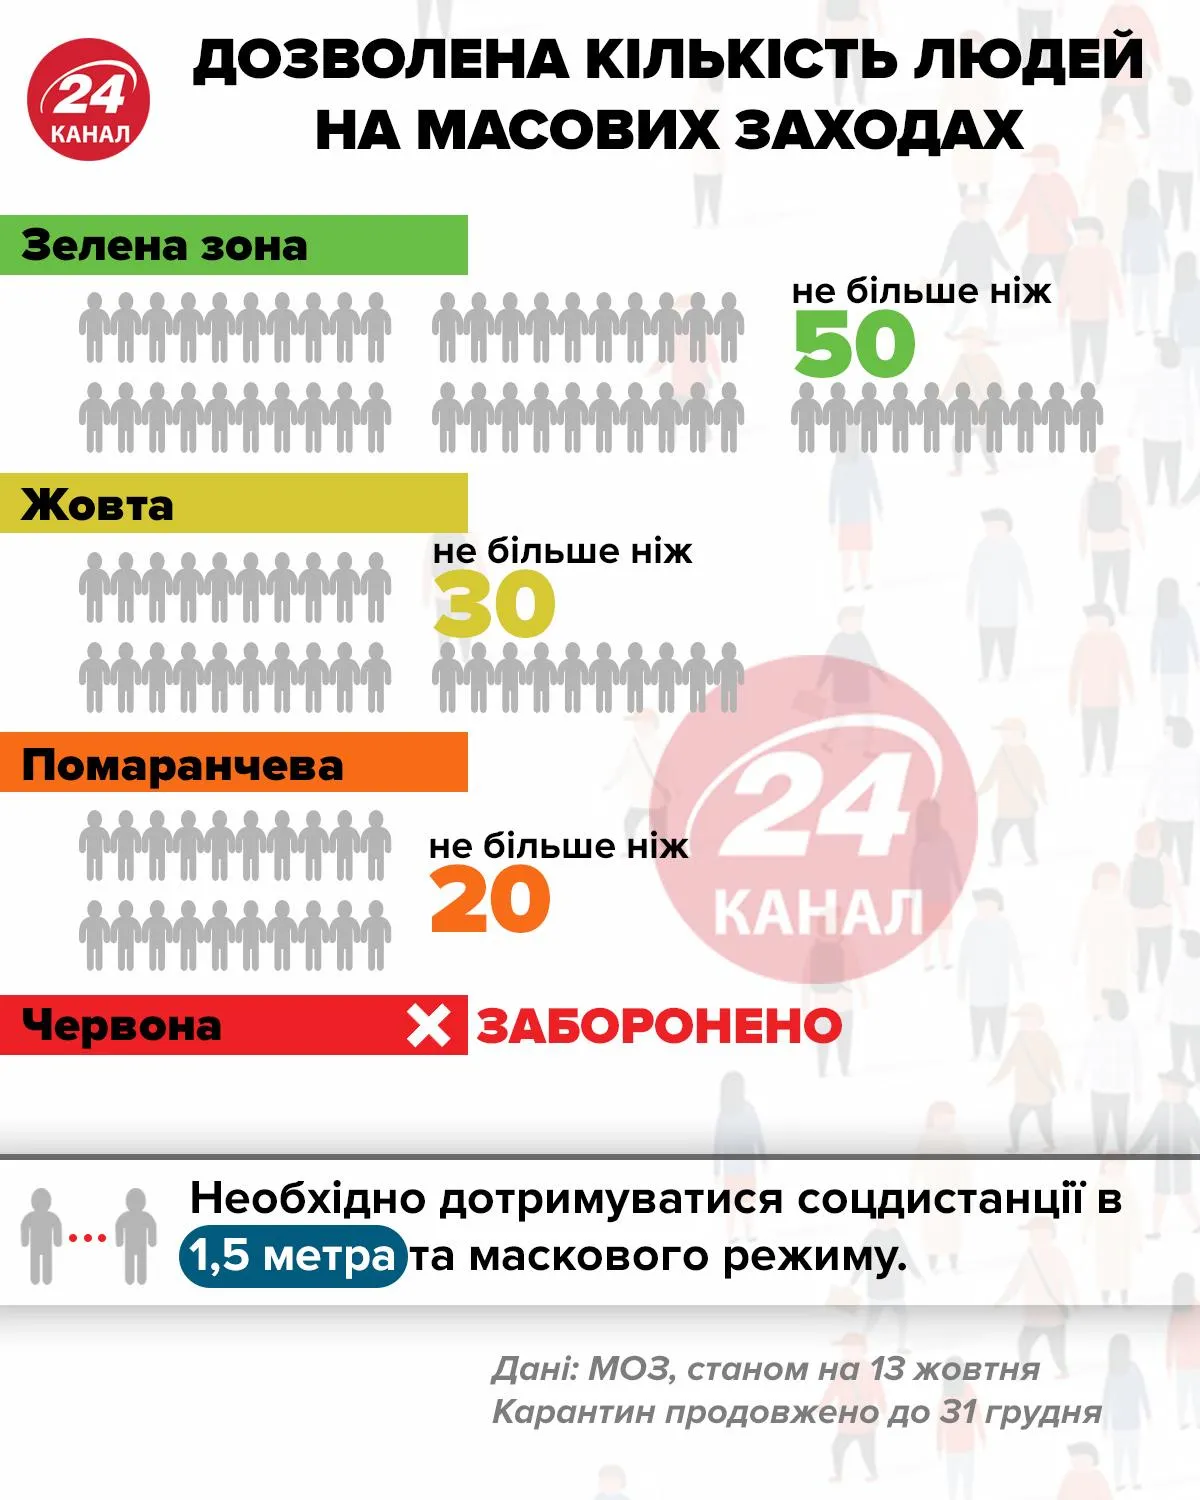 Количество людей на массовых мероприятиях инфографика 24 канал